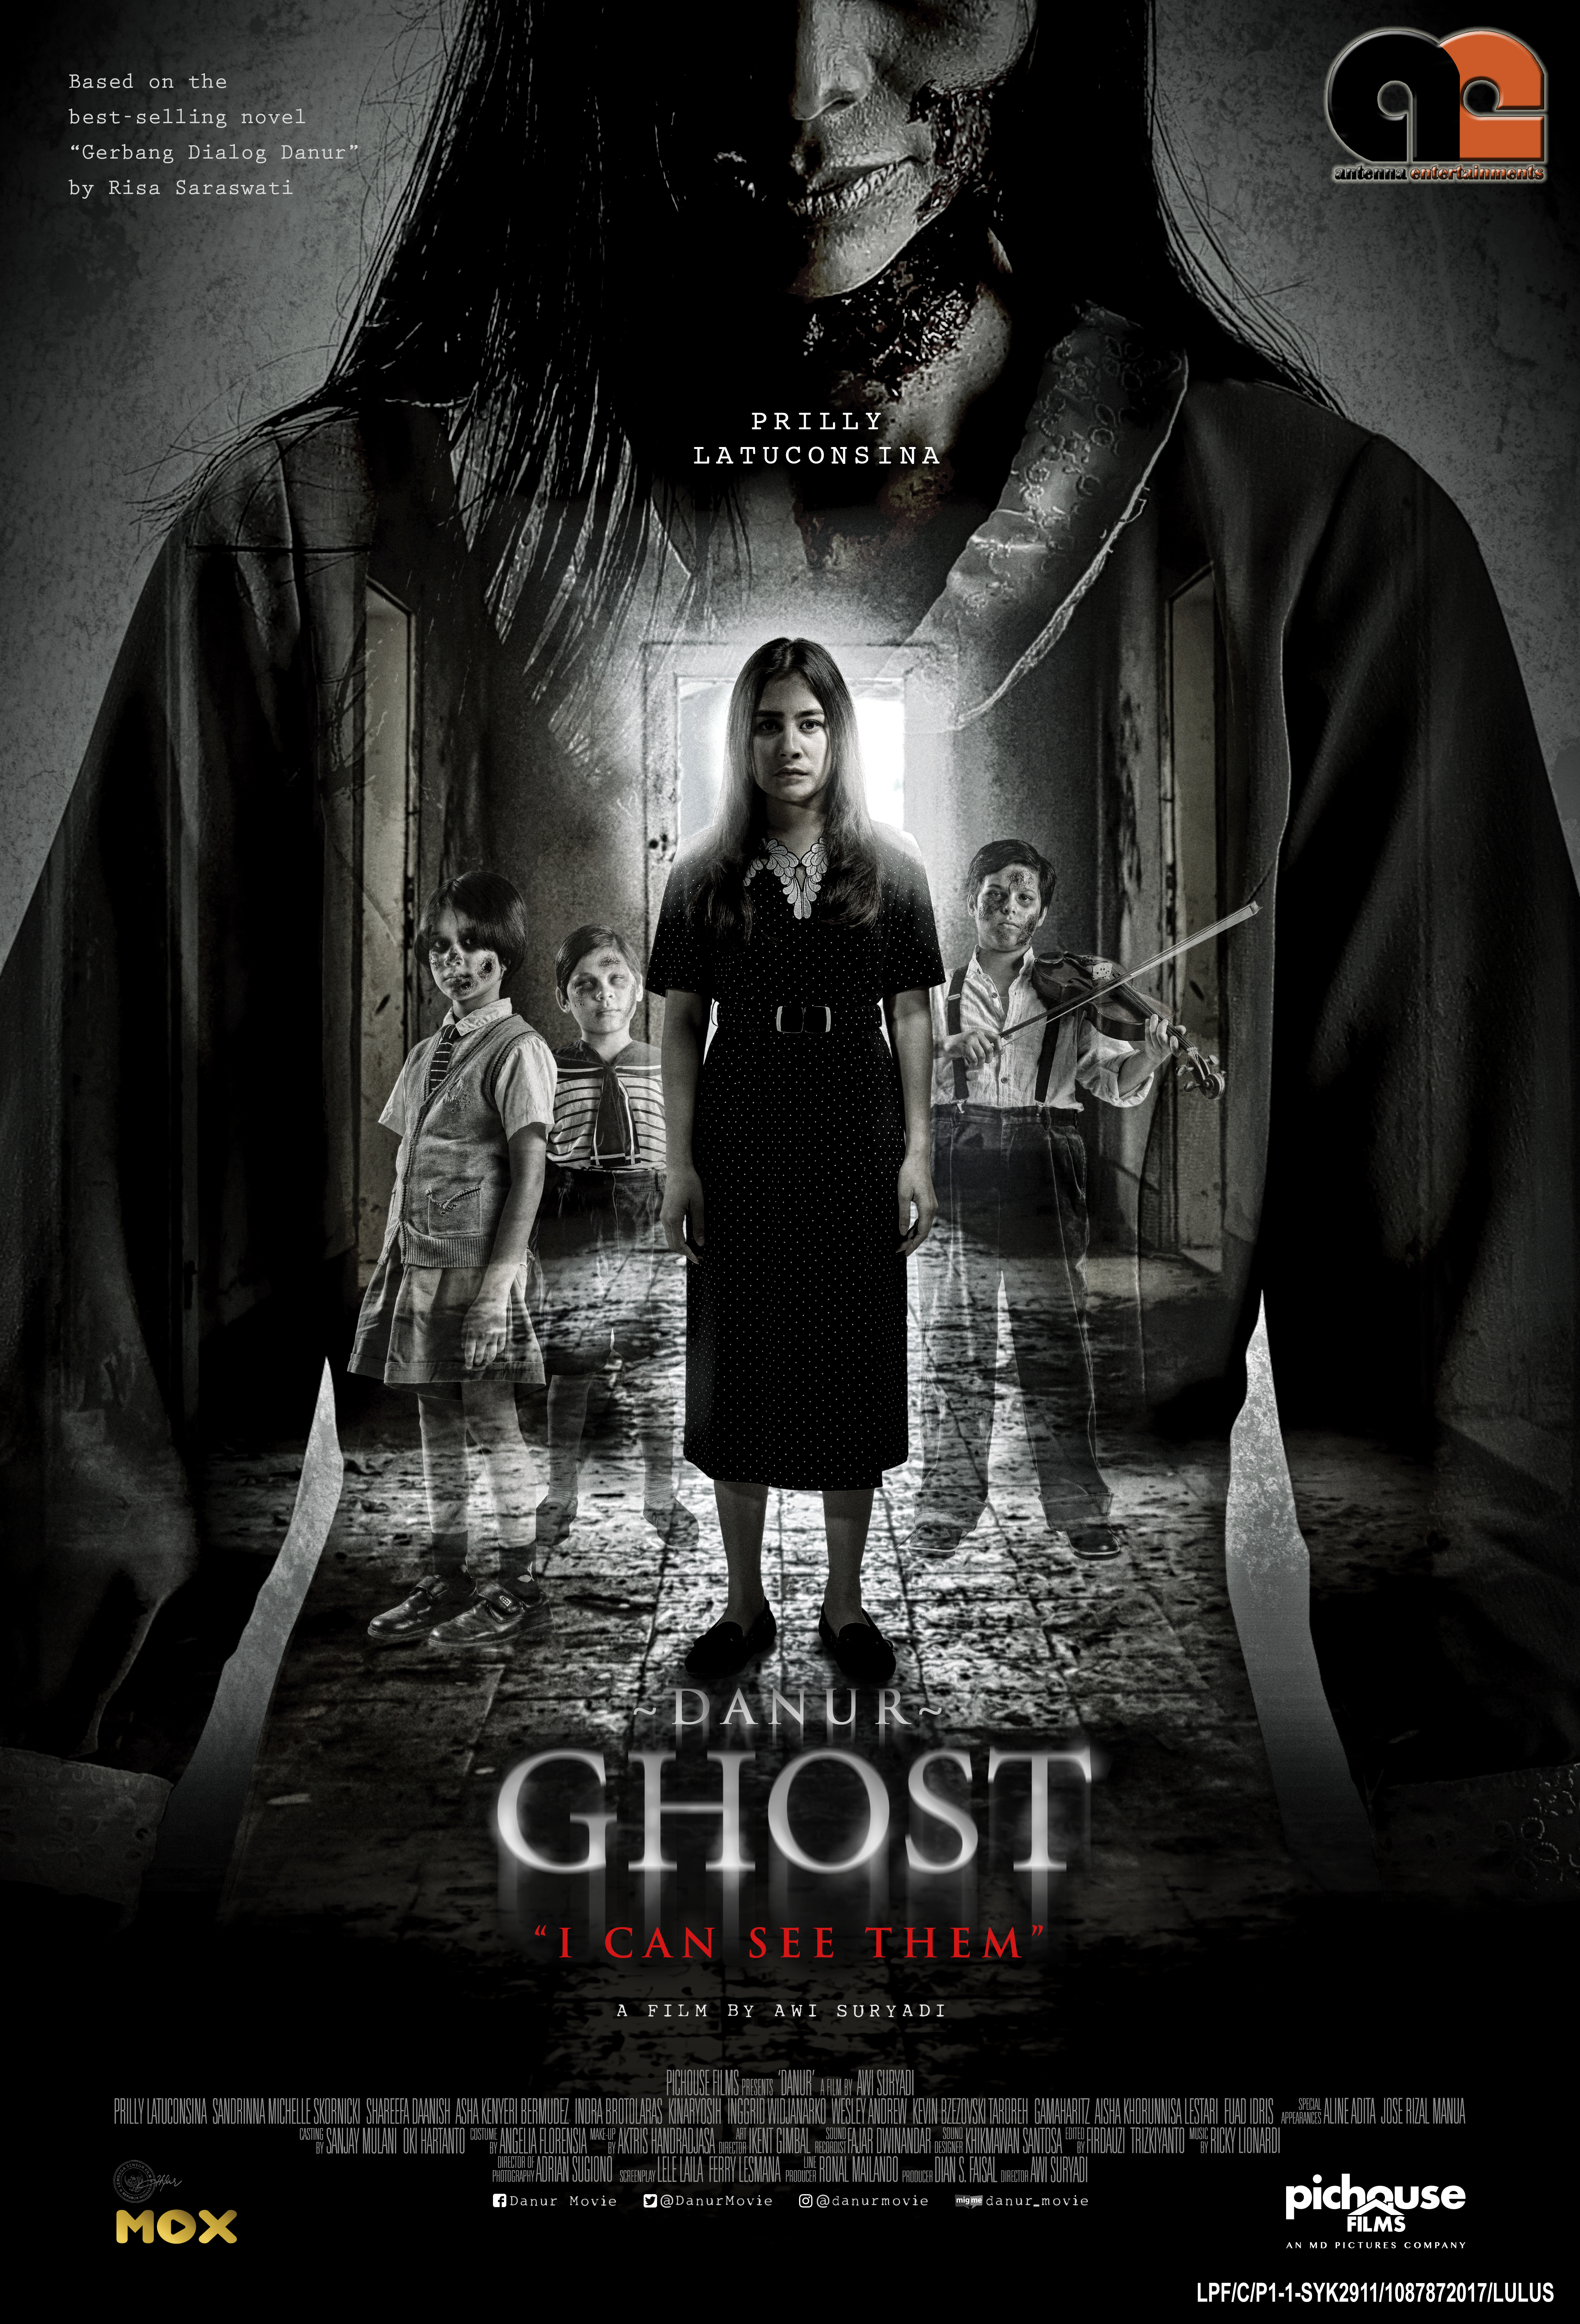 Kisah Seorang Gadis Yang Berkawan Dengan 3 Makhluk Halus. Jom Tengok Movie Ghost Danur Ni! Real Story Tau…